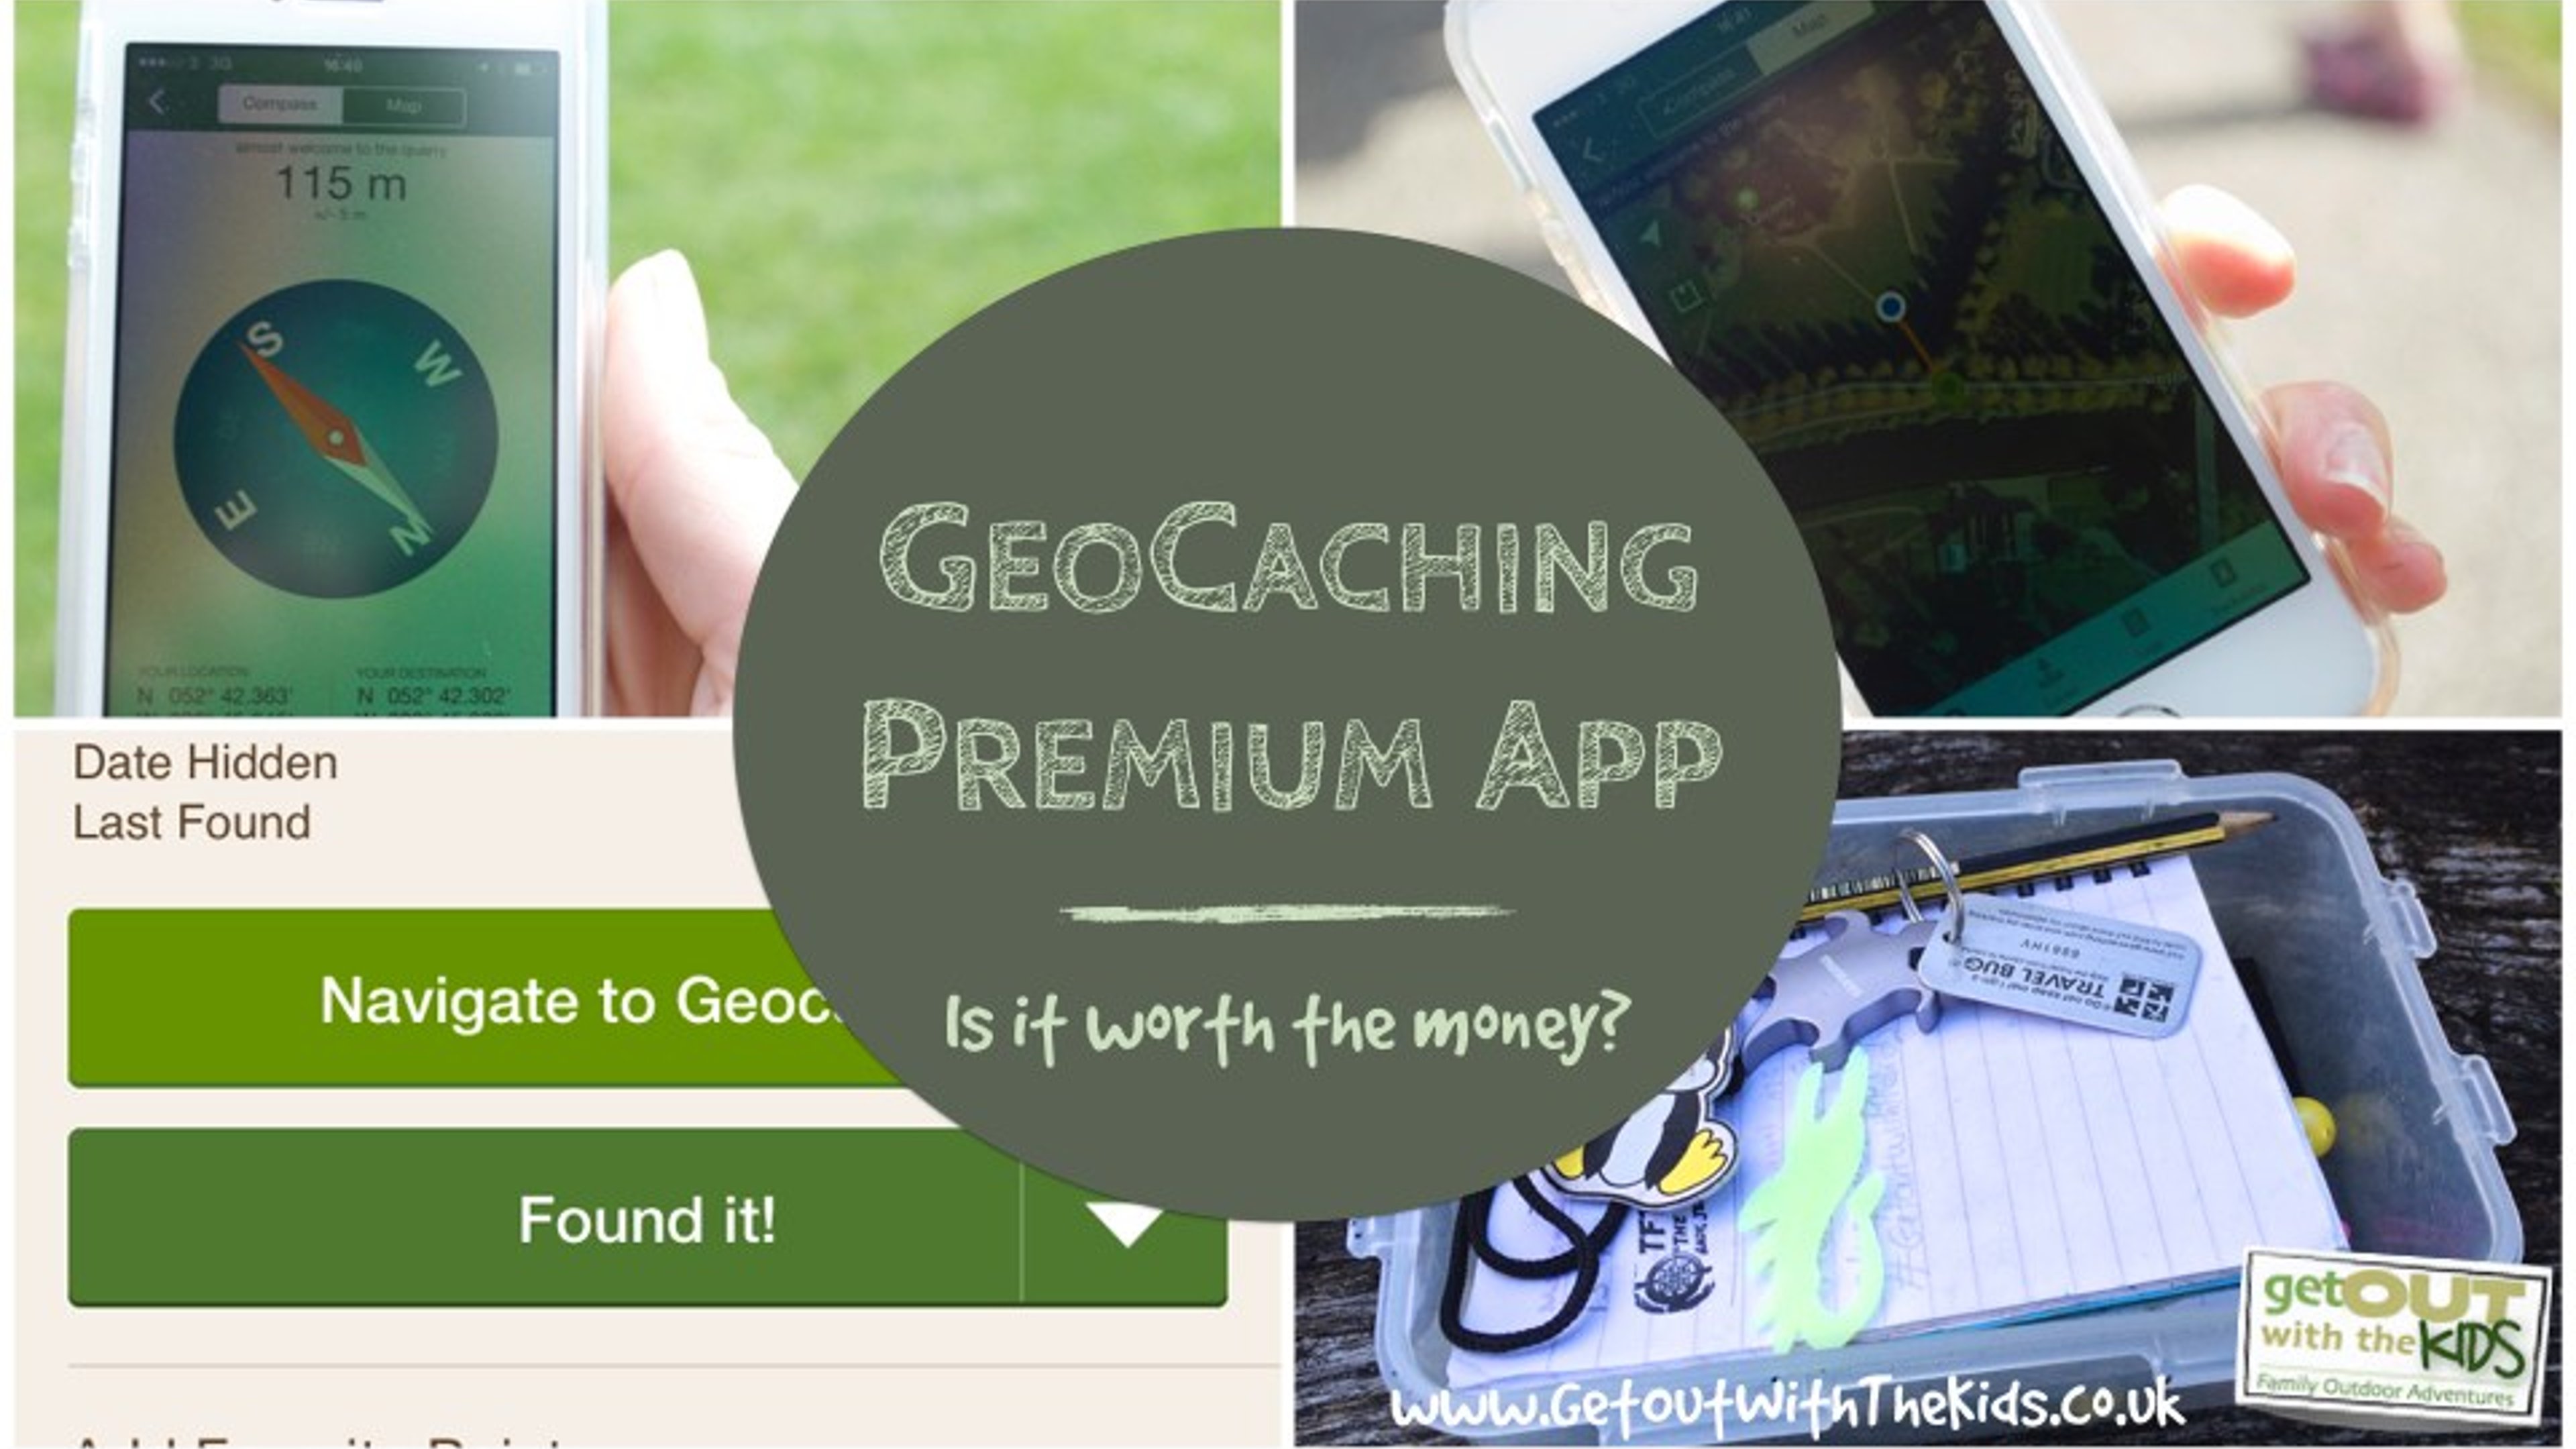 Geocaching Premium App Review